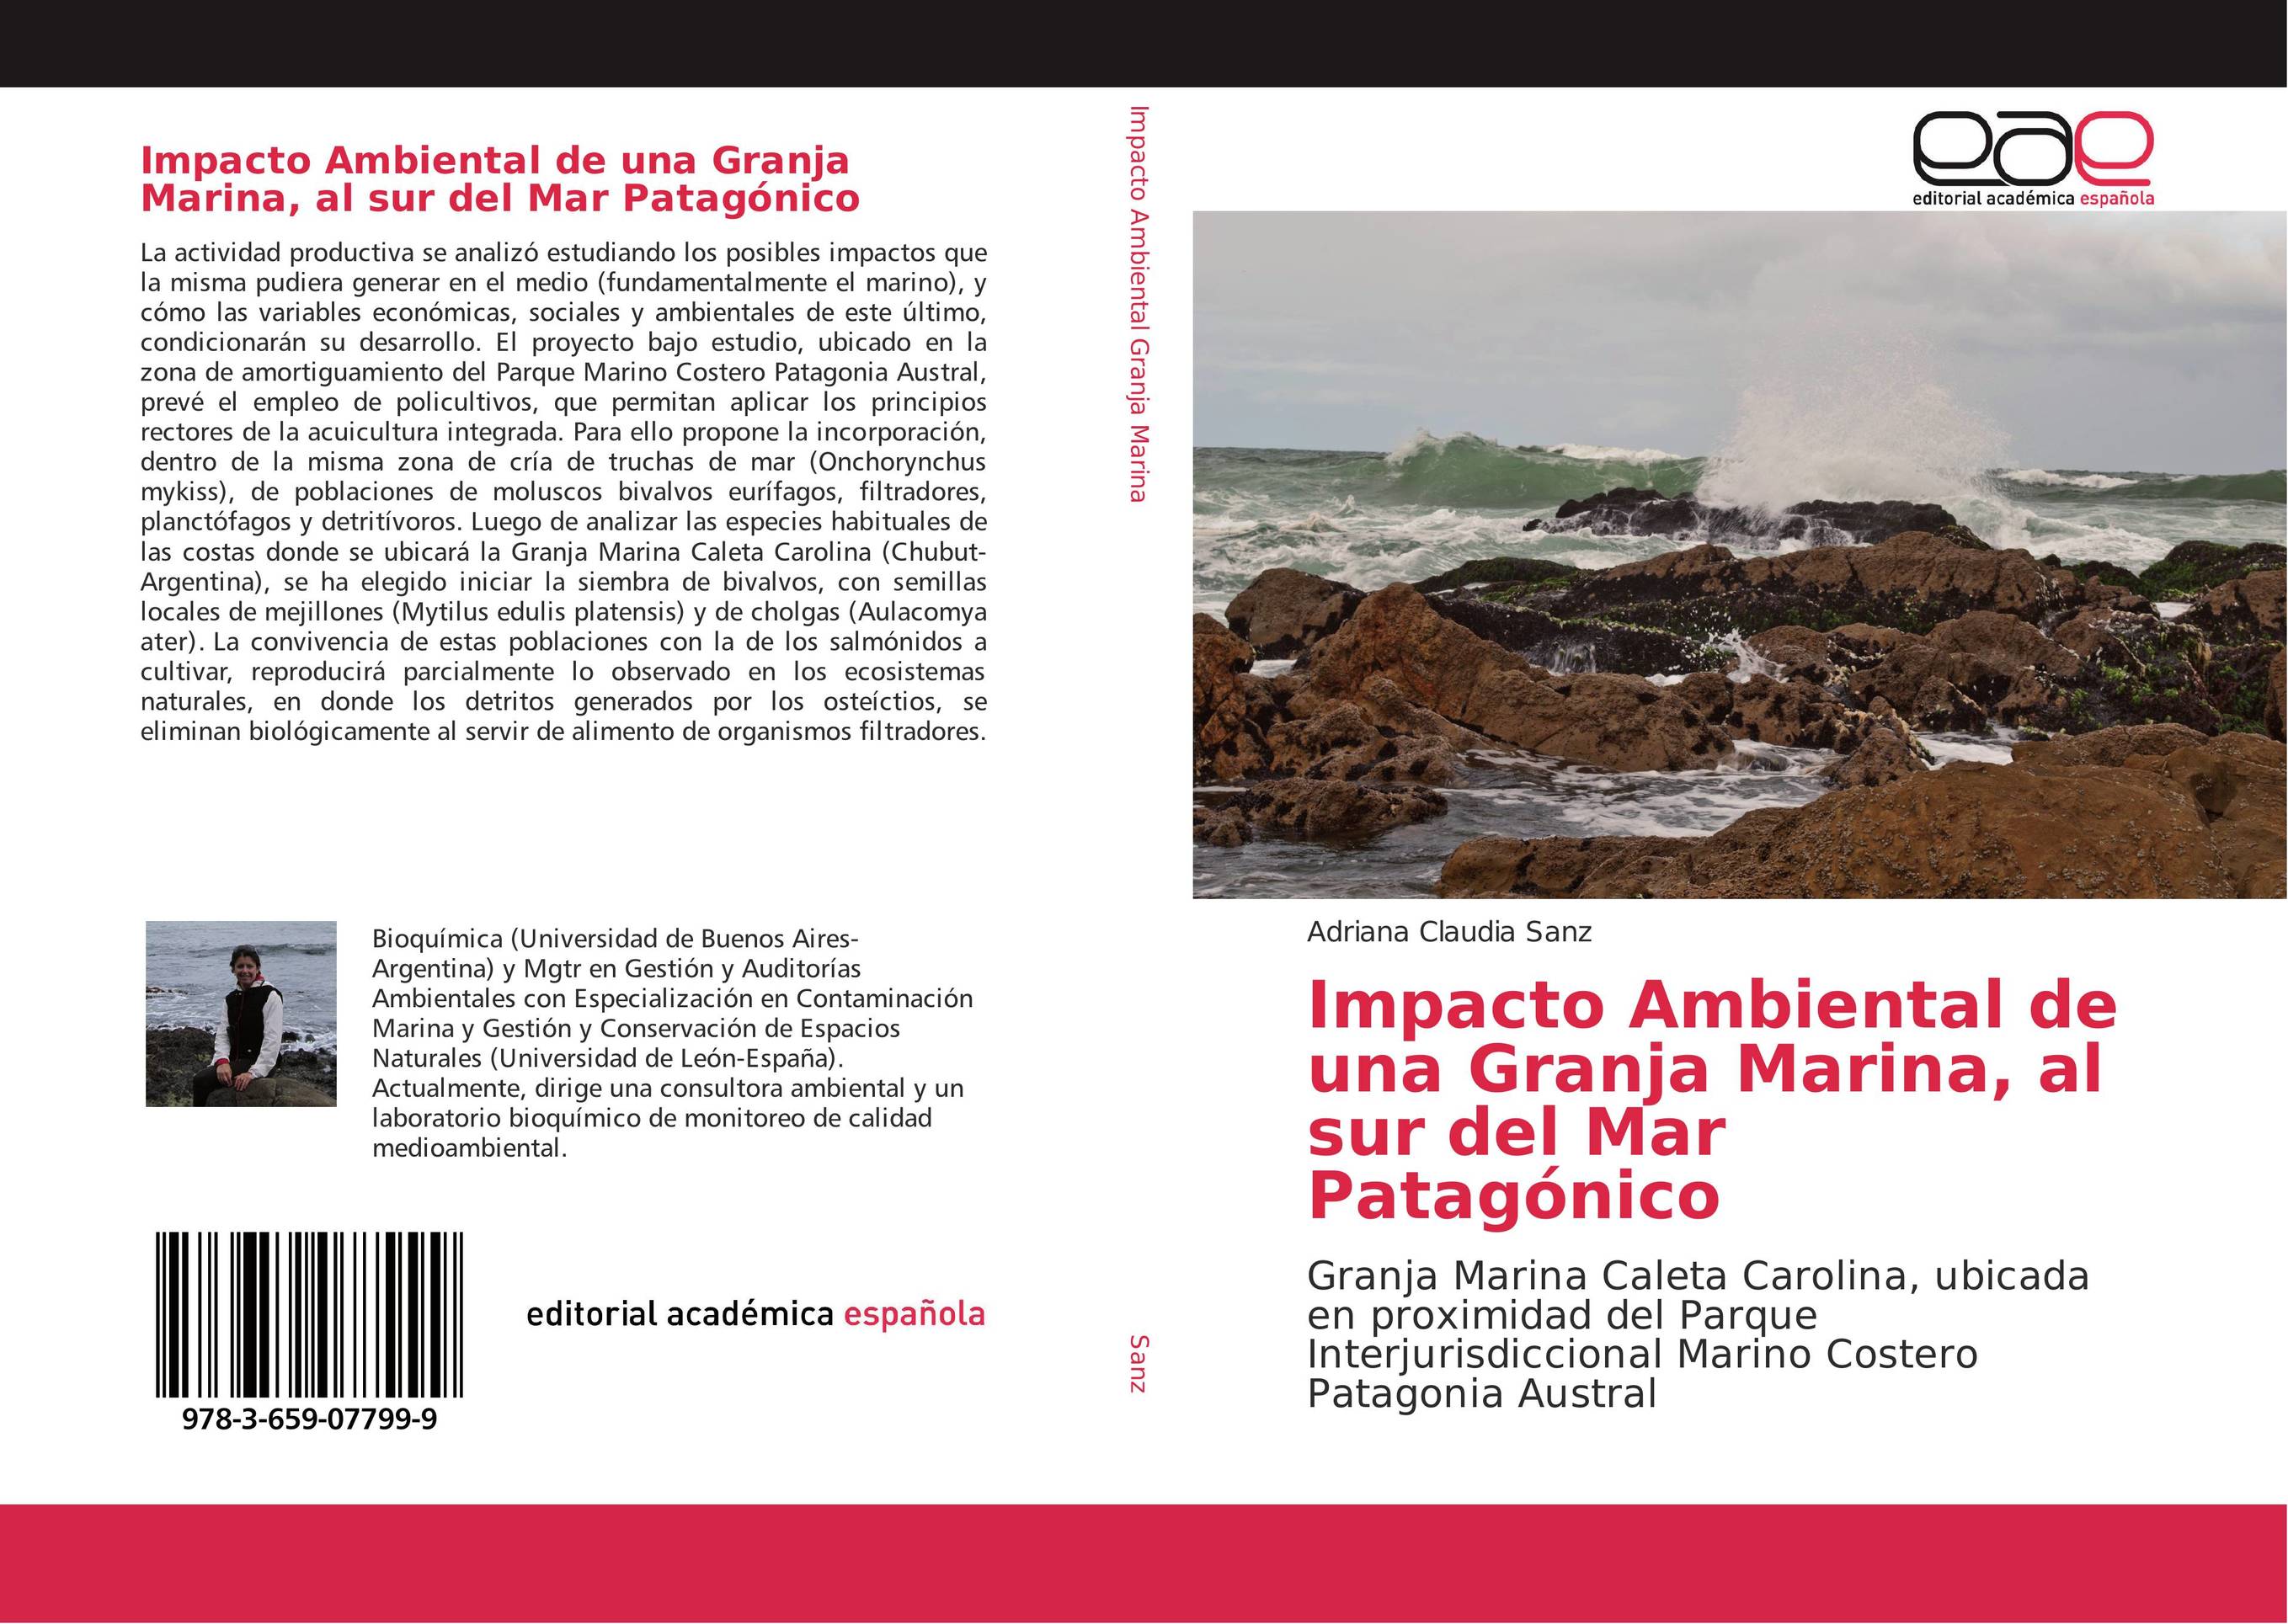 Impacto Ambiental de una Granja Marina, al sur del Mar Patagónico